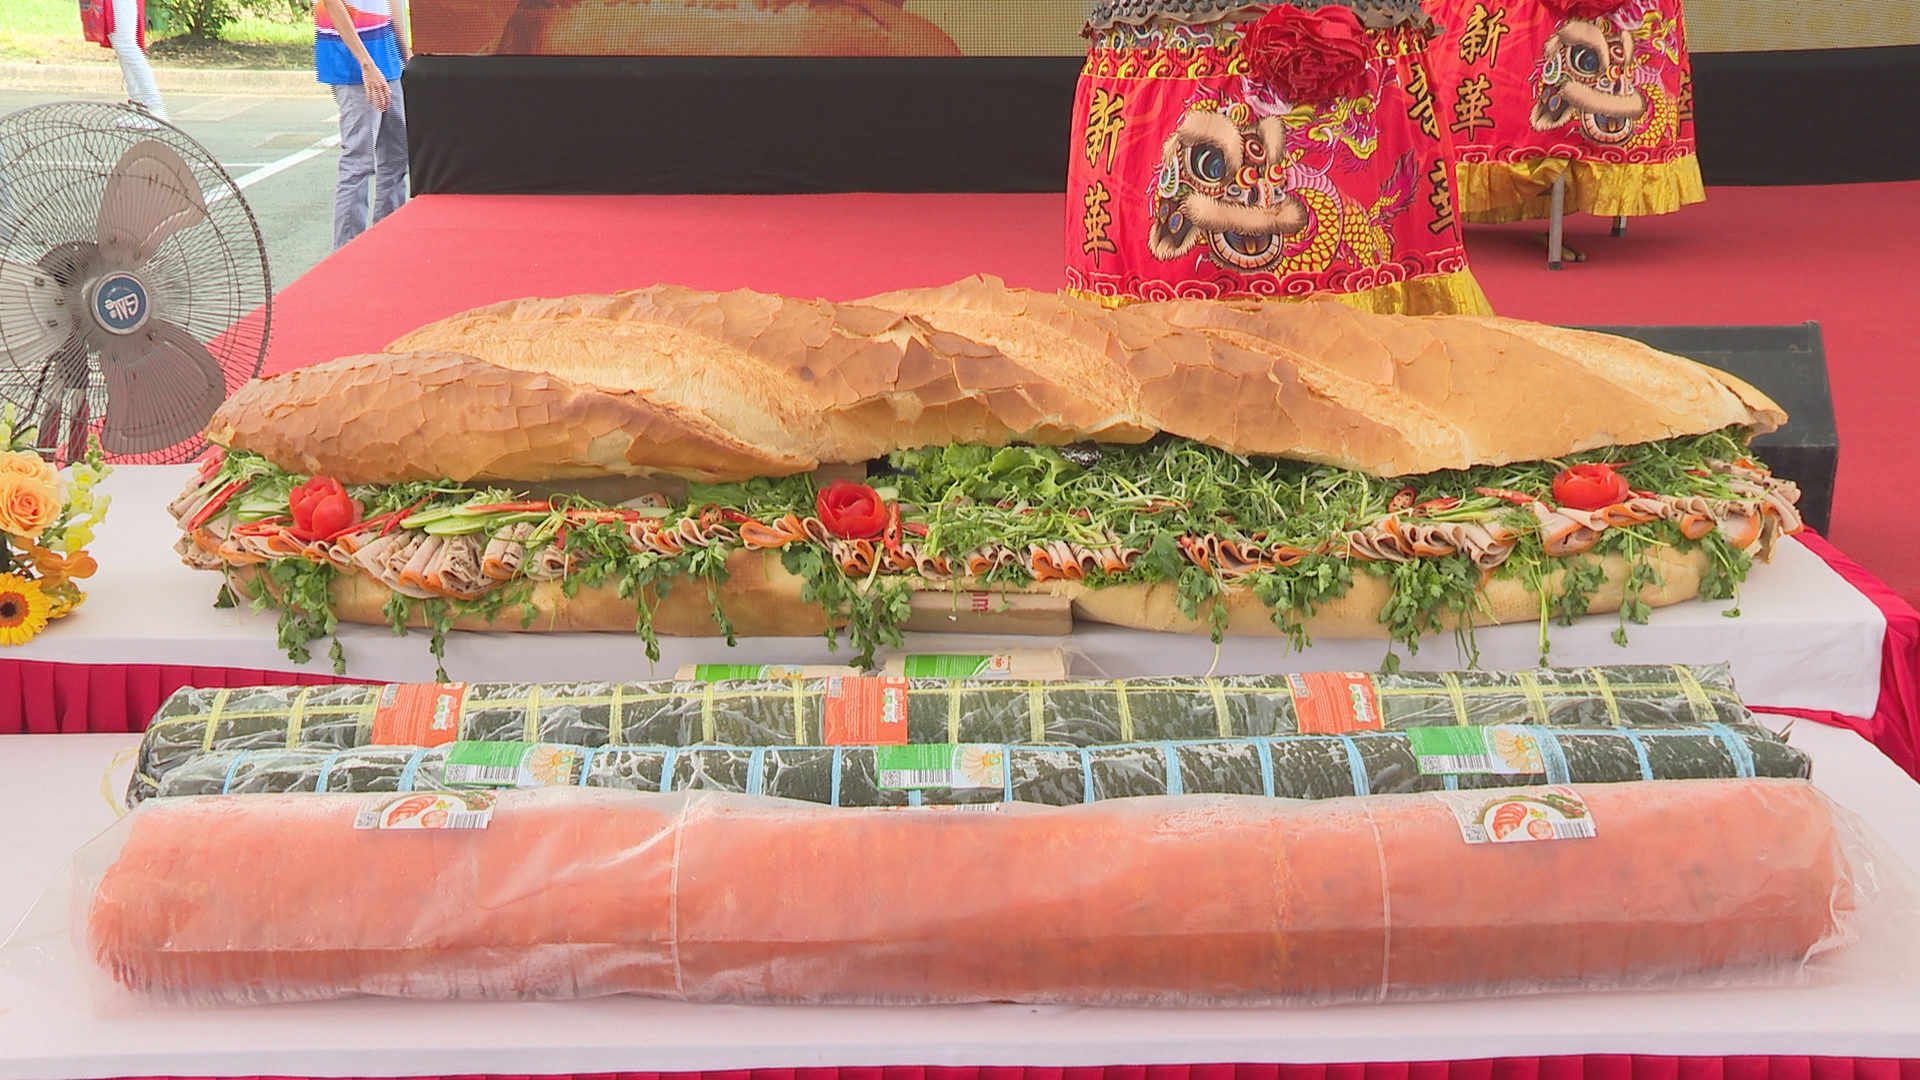 Ổ bánh mì Việt Nam lớn nhất mất 4 tiếng để chuẩn bị nguyên liệu